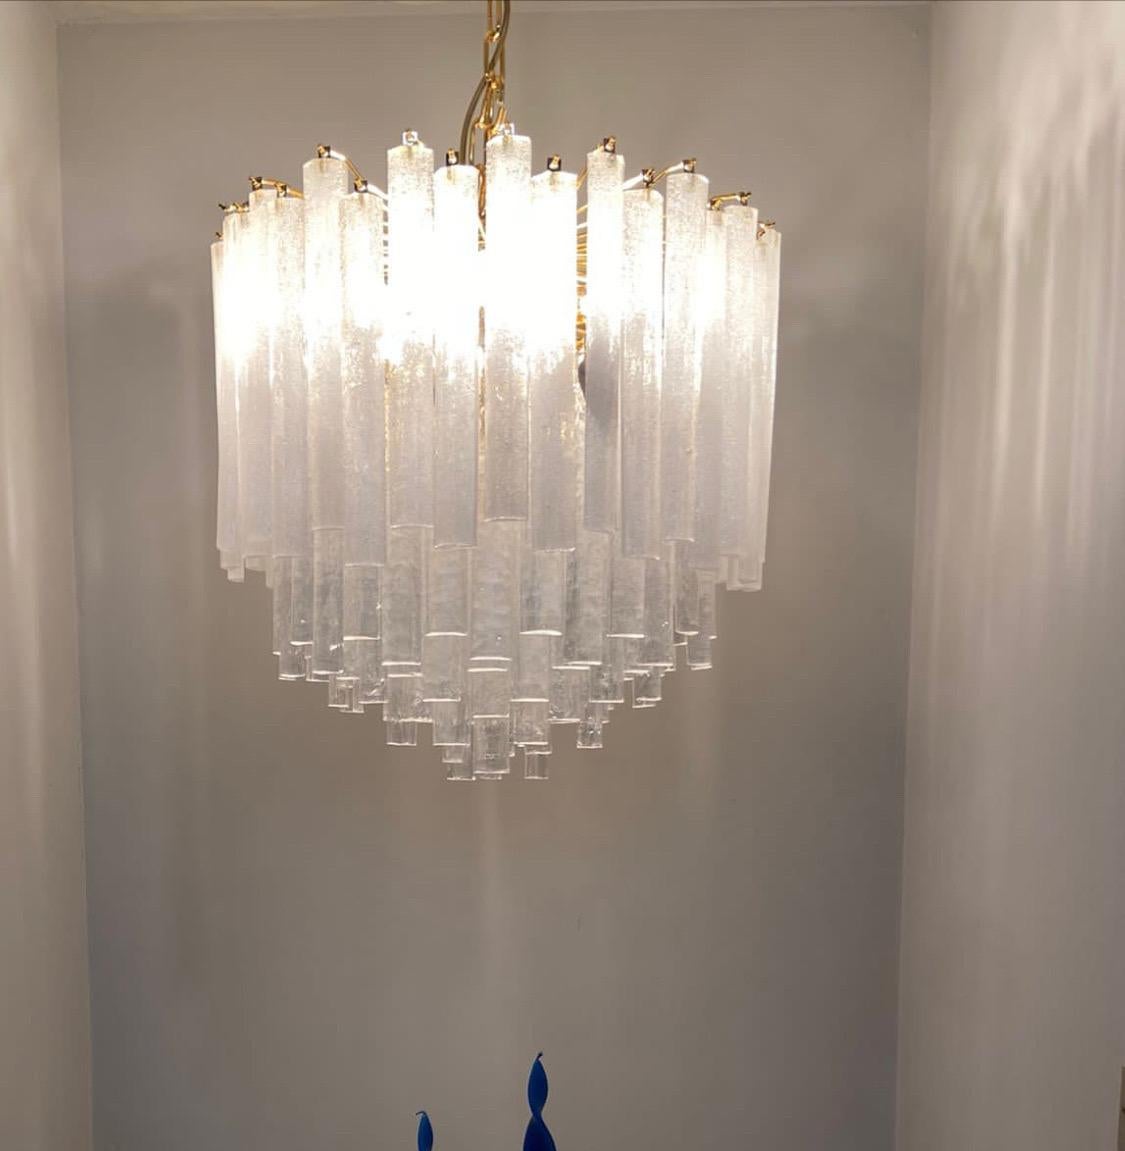 Lustre en verre de Murano de haute qualité, conçu et fabriqué en Italie par Murano dans les années 70. Ce lustre provient d'un important magasin de luminaires qui fermait ses portes, il n'a donc jamais été installé dans une maison et fonctionne donc